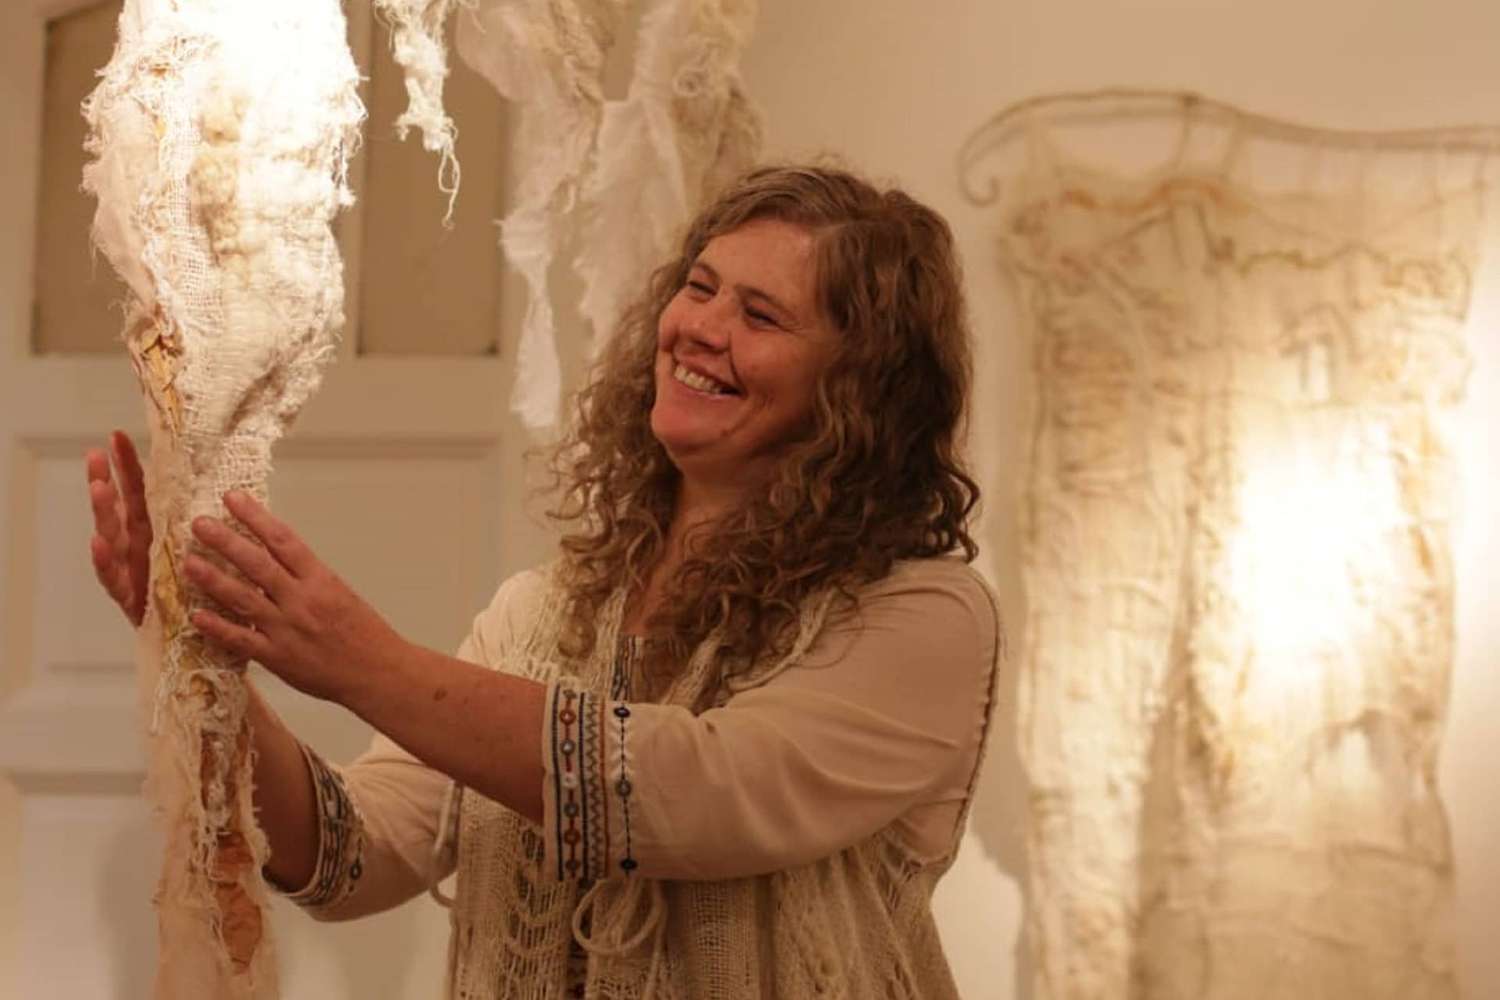 Abrazos Taller Textil, la propuesta de la artista María Alejandra Asensio